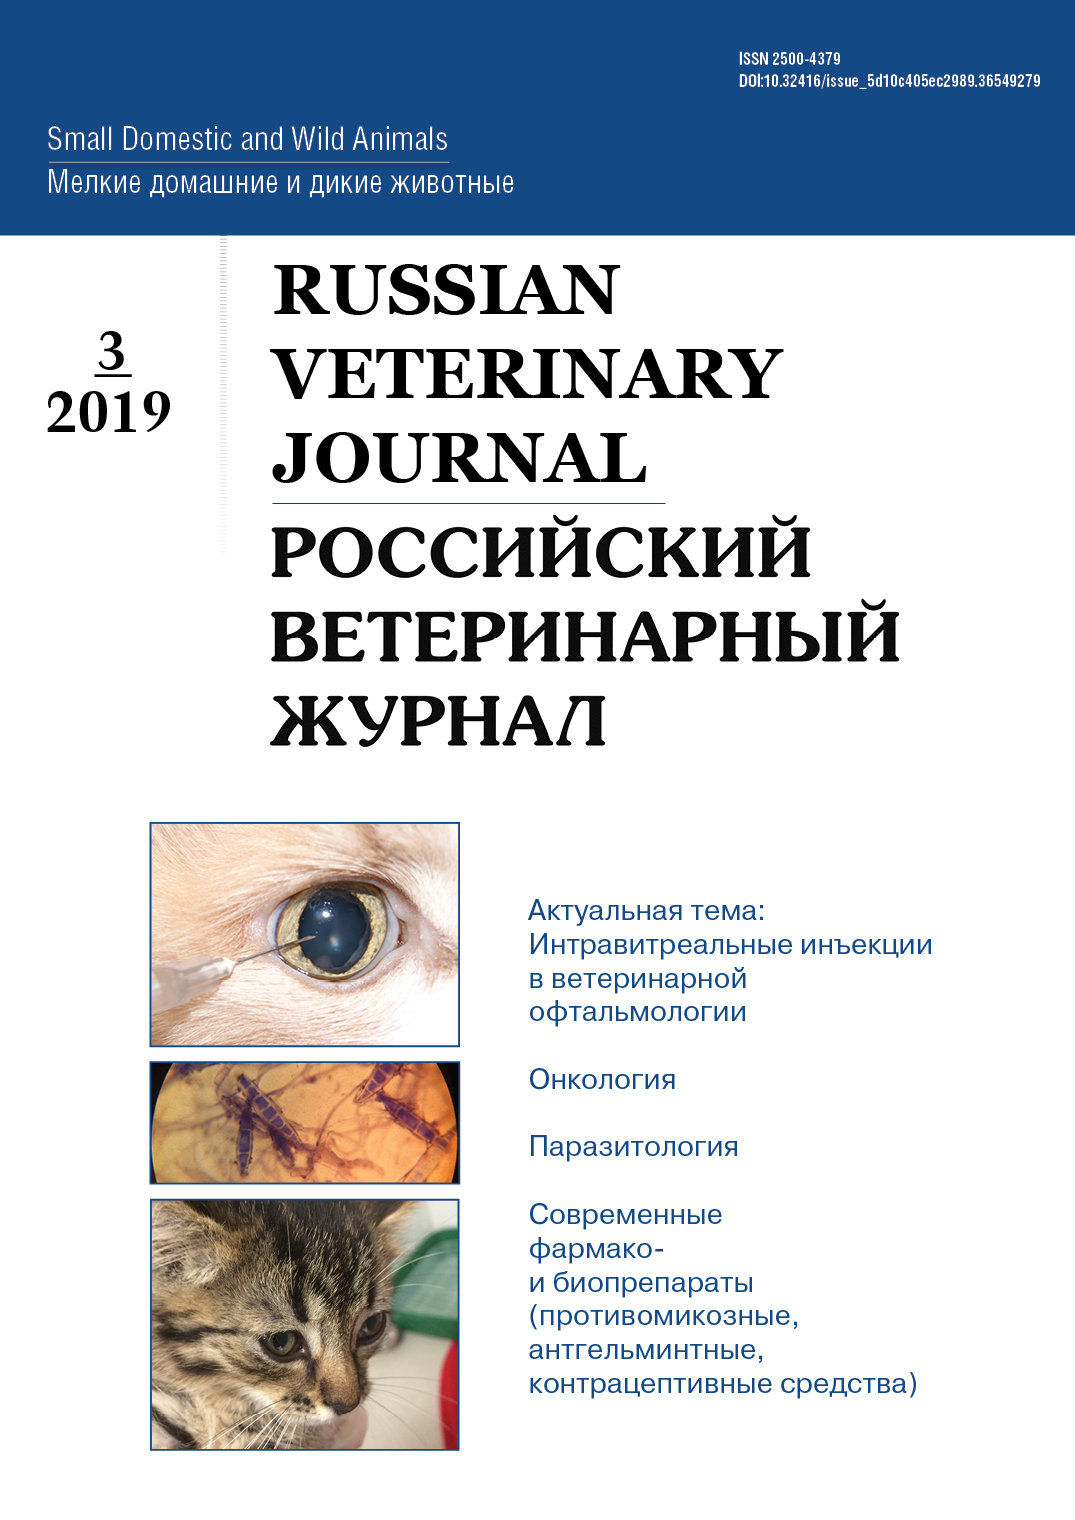             Российский ветеринарный журнал
    